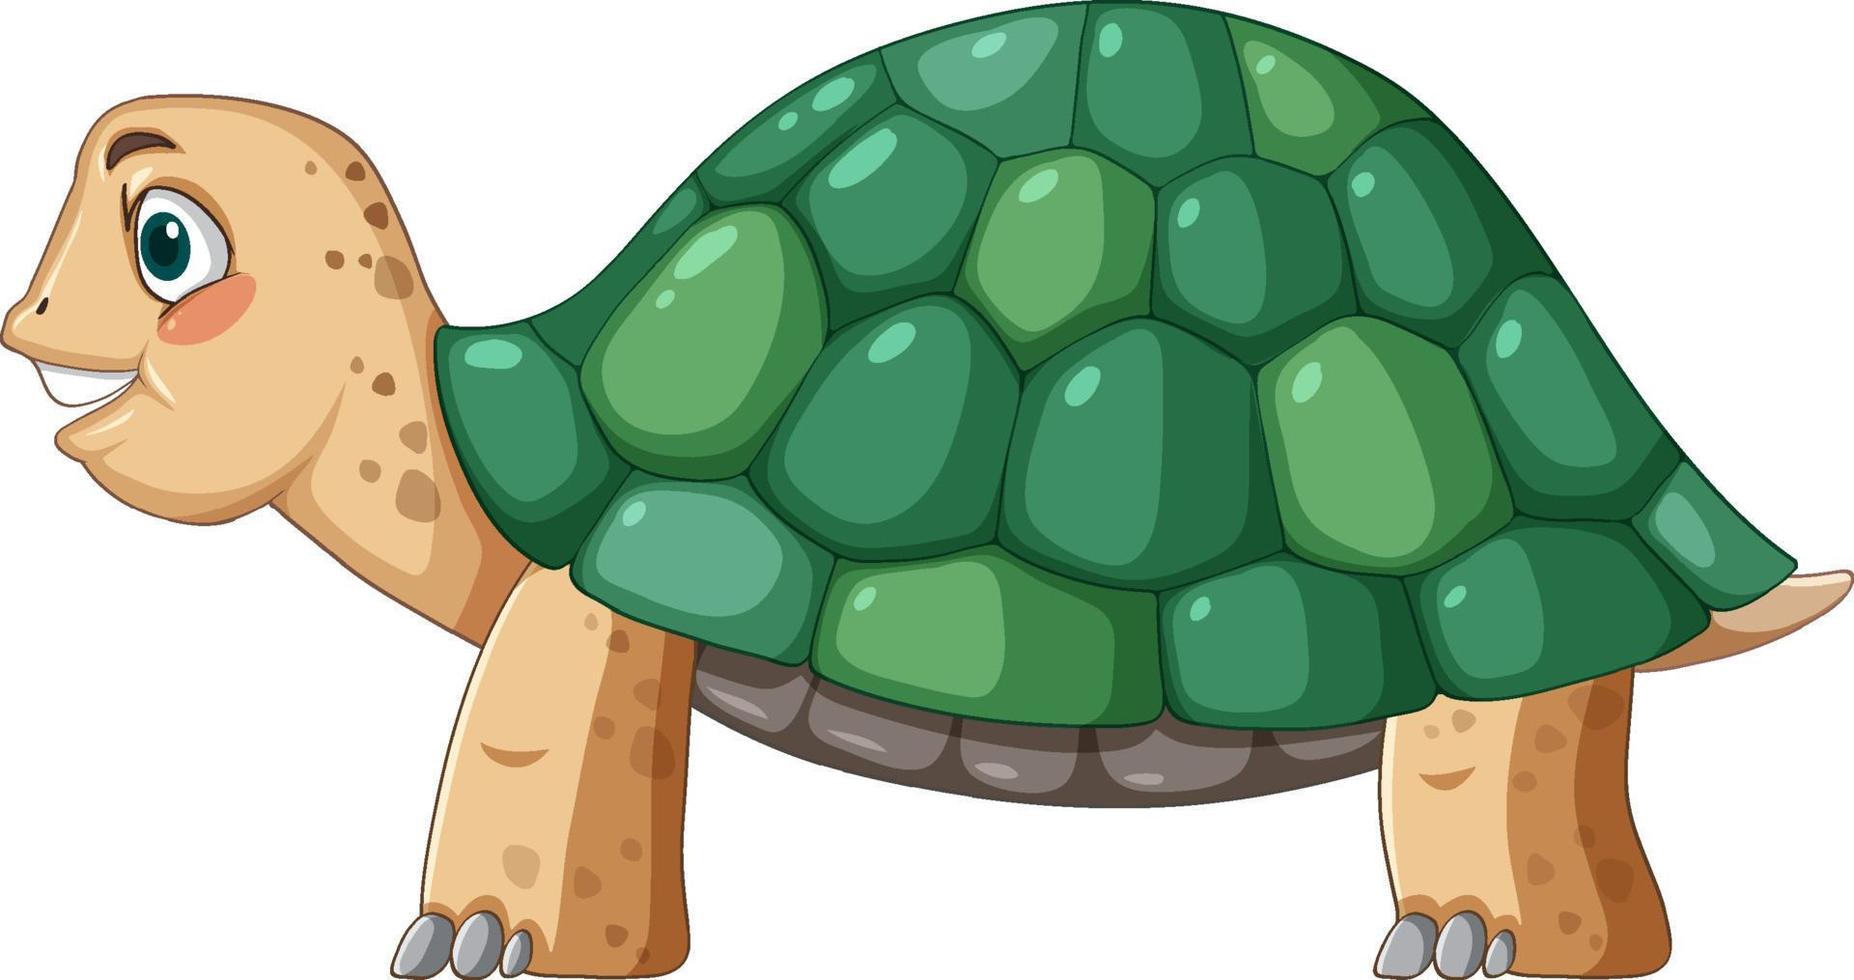 vista laterale della tartaruga con guscio verde in stile cartone animato vettore